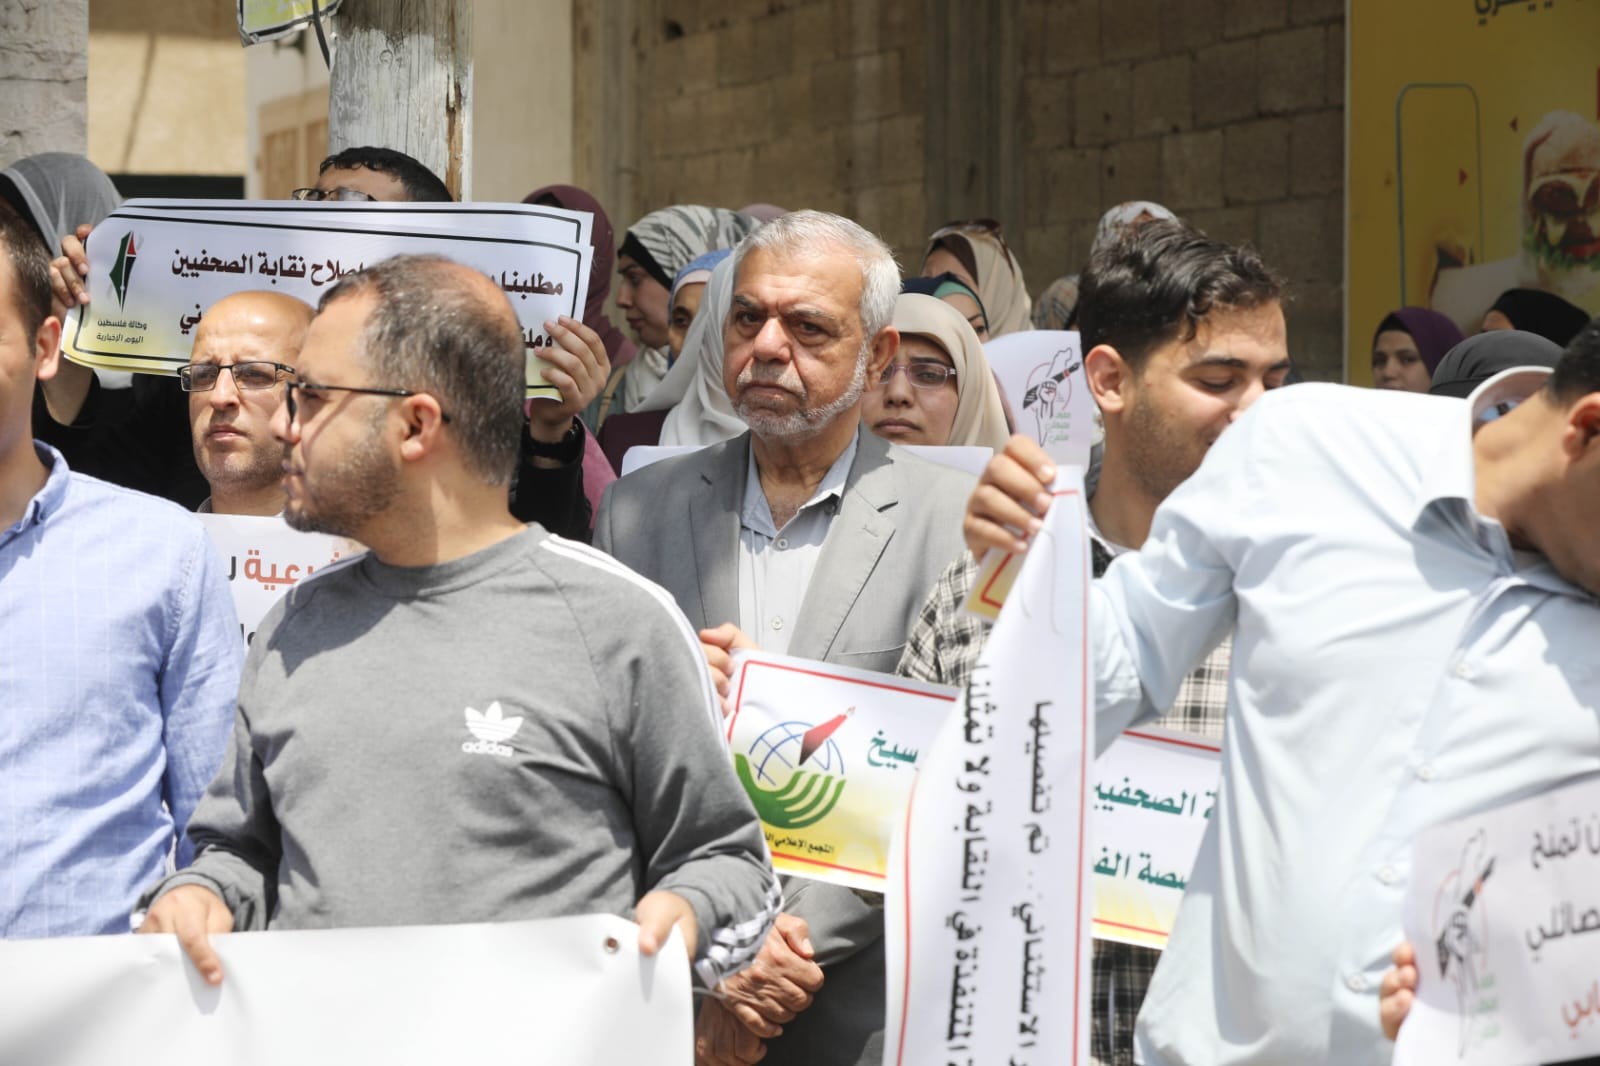 صور من الاعتصام الذي نظمه حراك الصحفيين ضد انتخابات نقابة الصحفيين (13).jpg